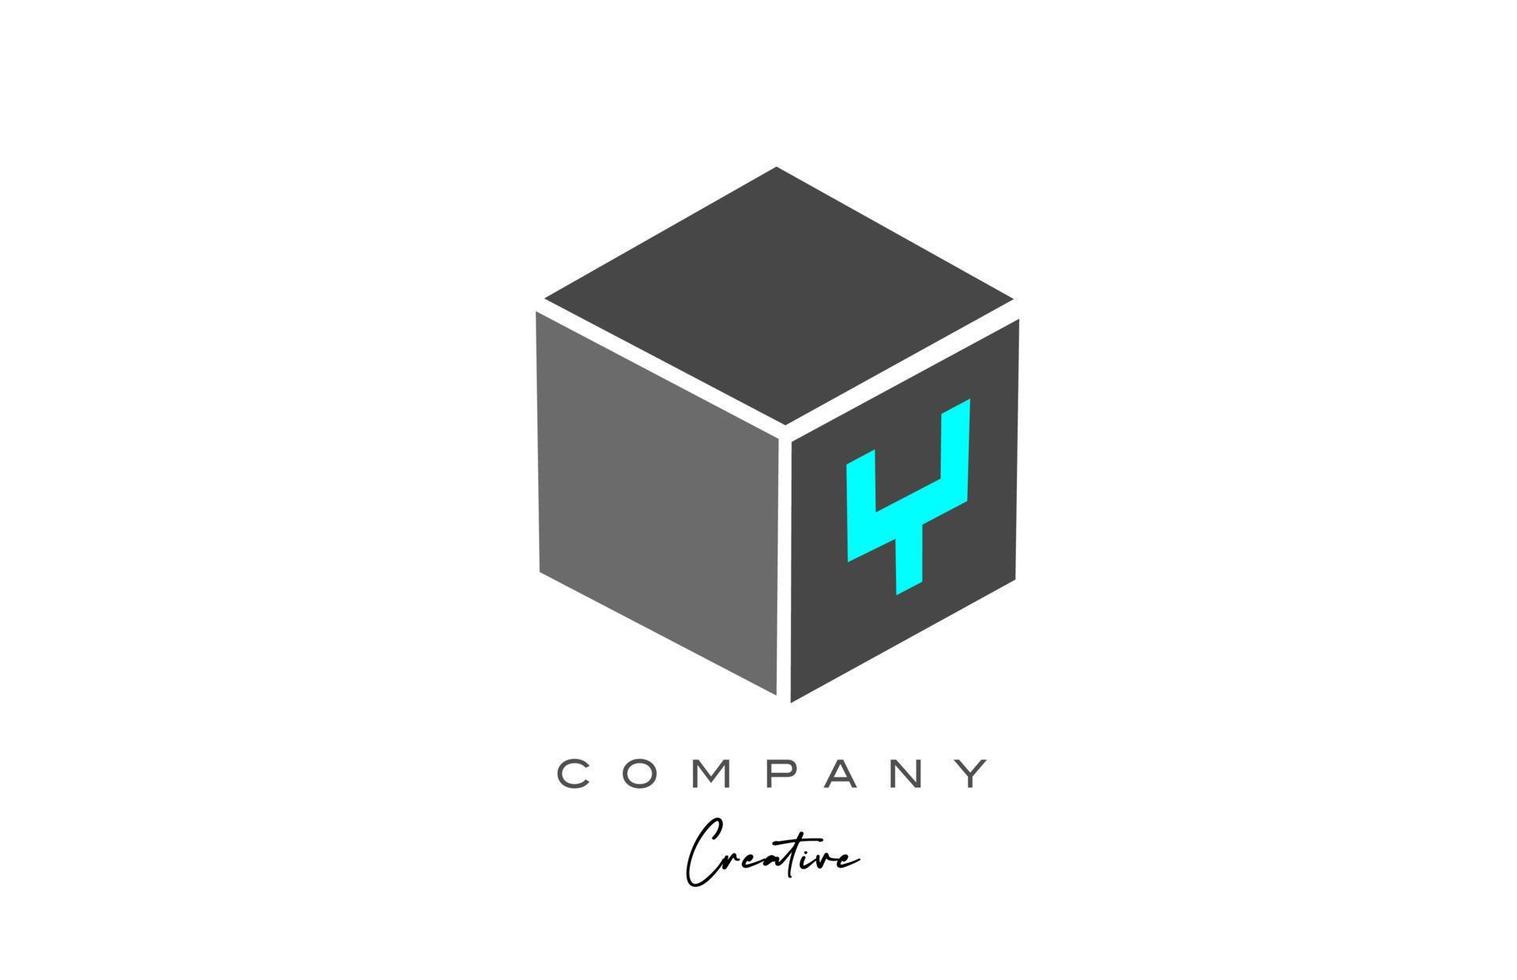 Y gris cubo letra alfabeto letra logo icono en color azul. plantilla de diseño creativo para negocios y empresas vector